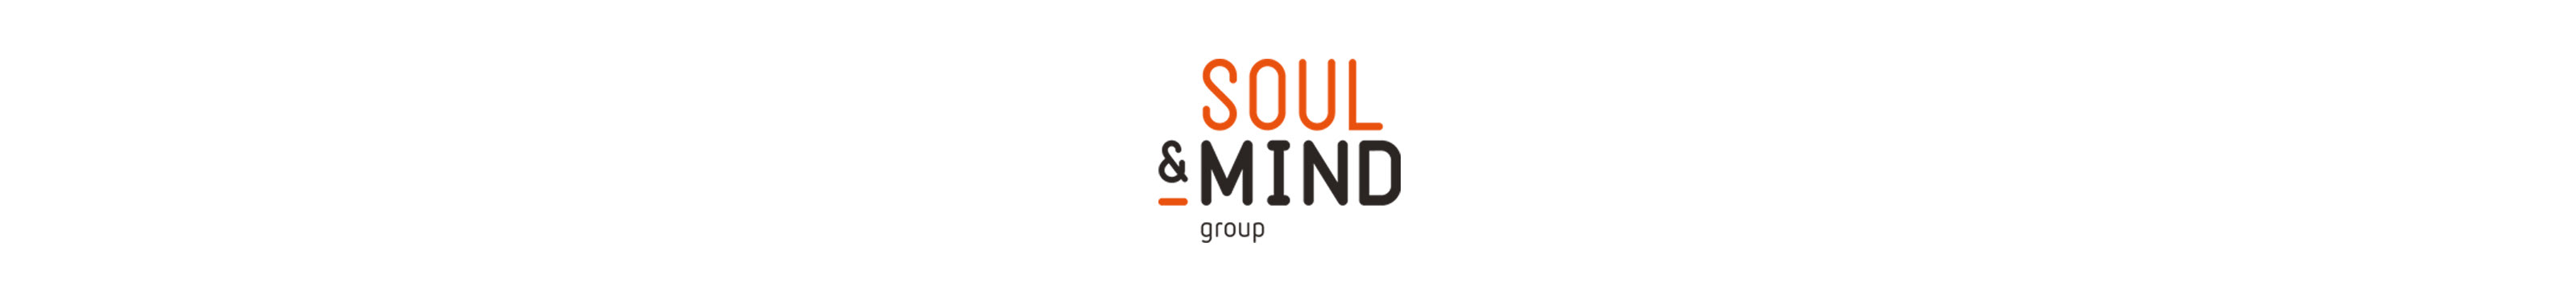 Soul & Mind's profile banner